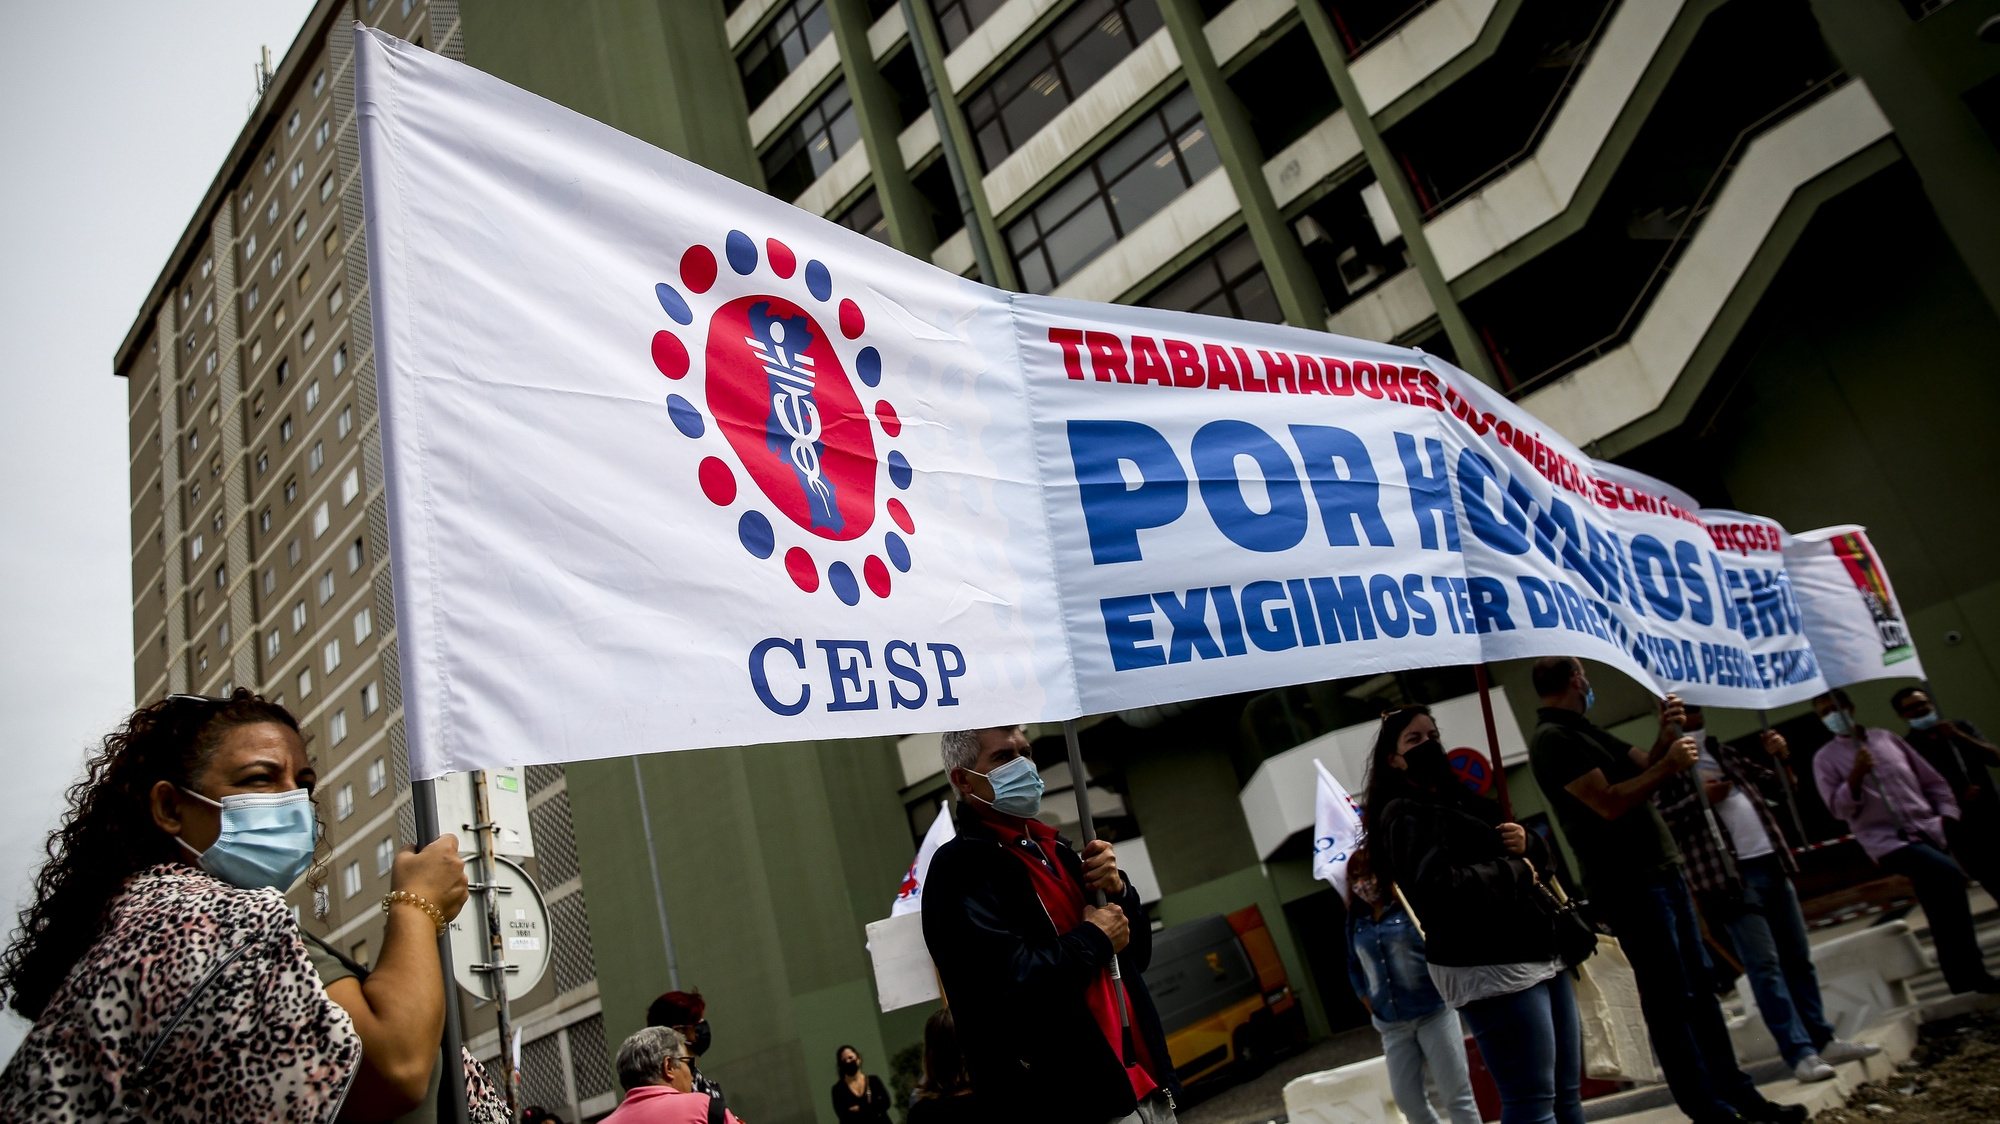 Vigília dos trabalhadores dos supermercados Pingo Doce / Jerónimo Martins contra o banco de horas, promovida pelo CESP - Sindicato dos Trabalhadores do Comércio, Escritórios e Serviços de Portugal, em Lisboa, 24 de setembro de 2020. NUNO FOX/LUSA